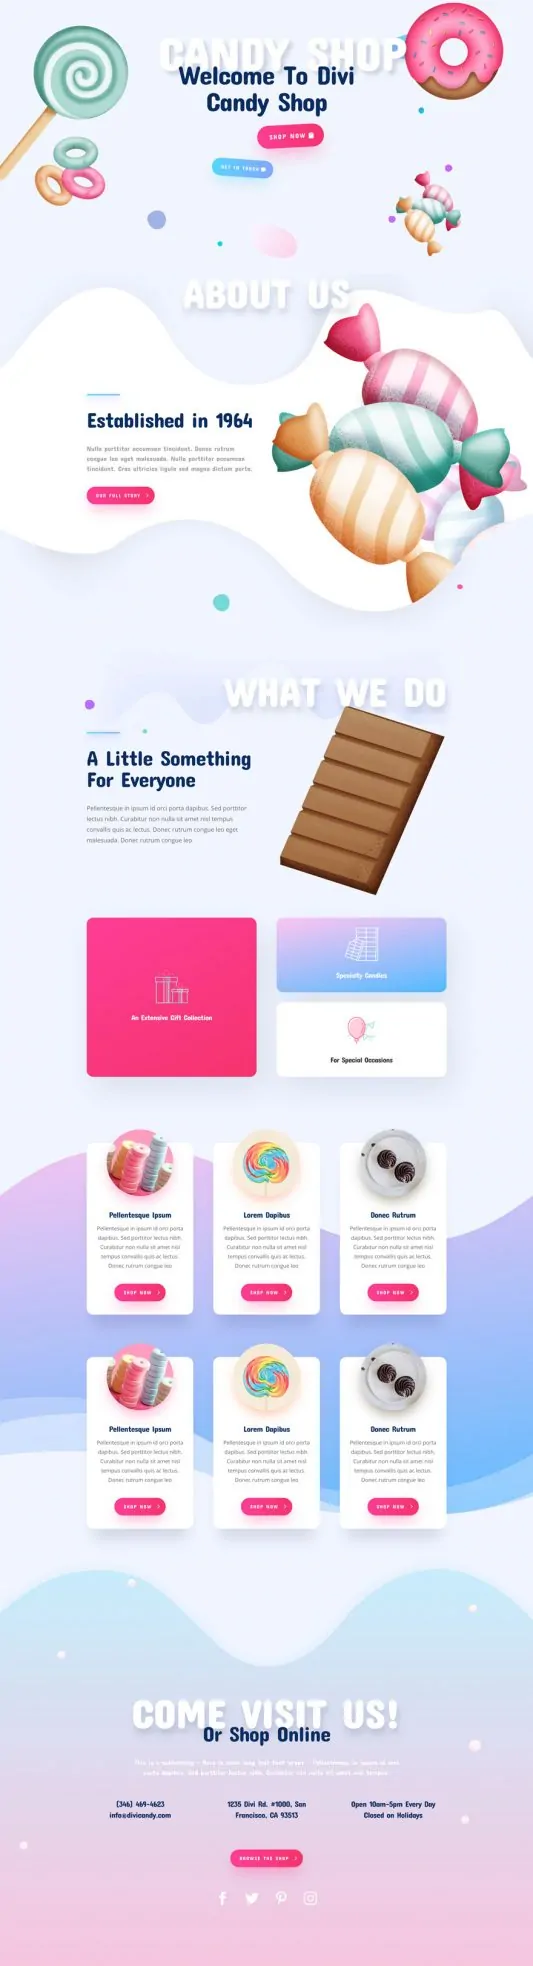 Candy Shop Web Design 2